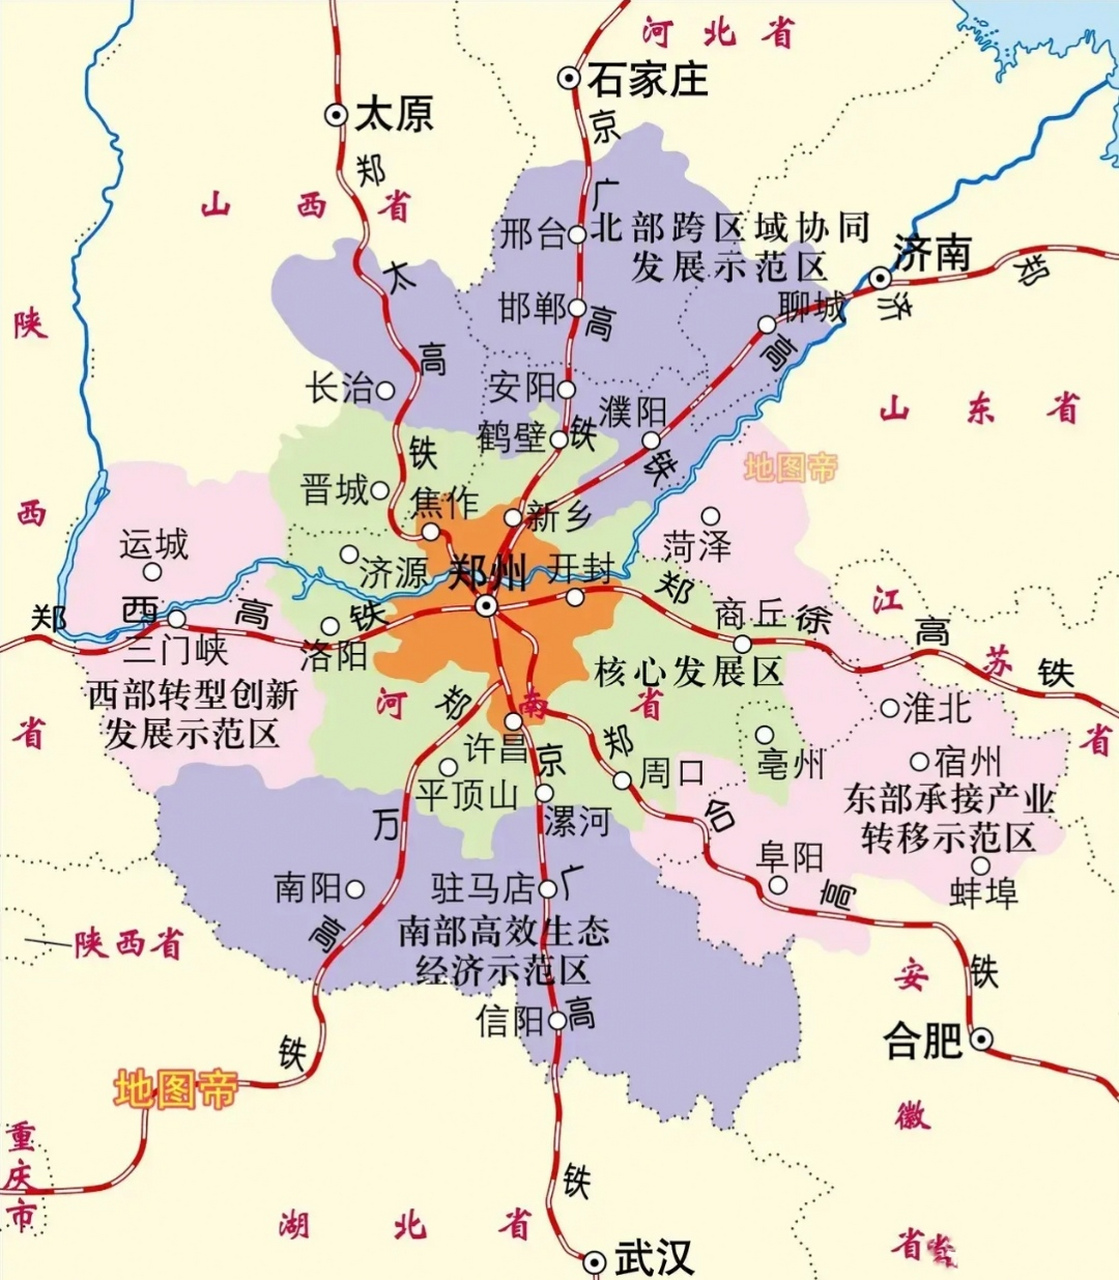 河南郑州这地理位置,这片地区叫做"中原",真的是名副其实.